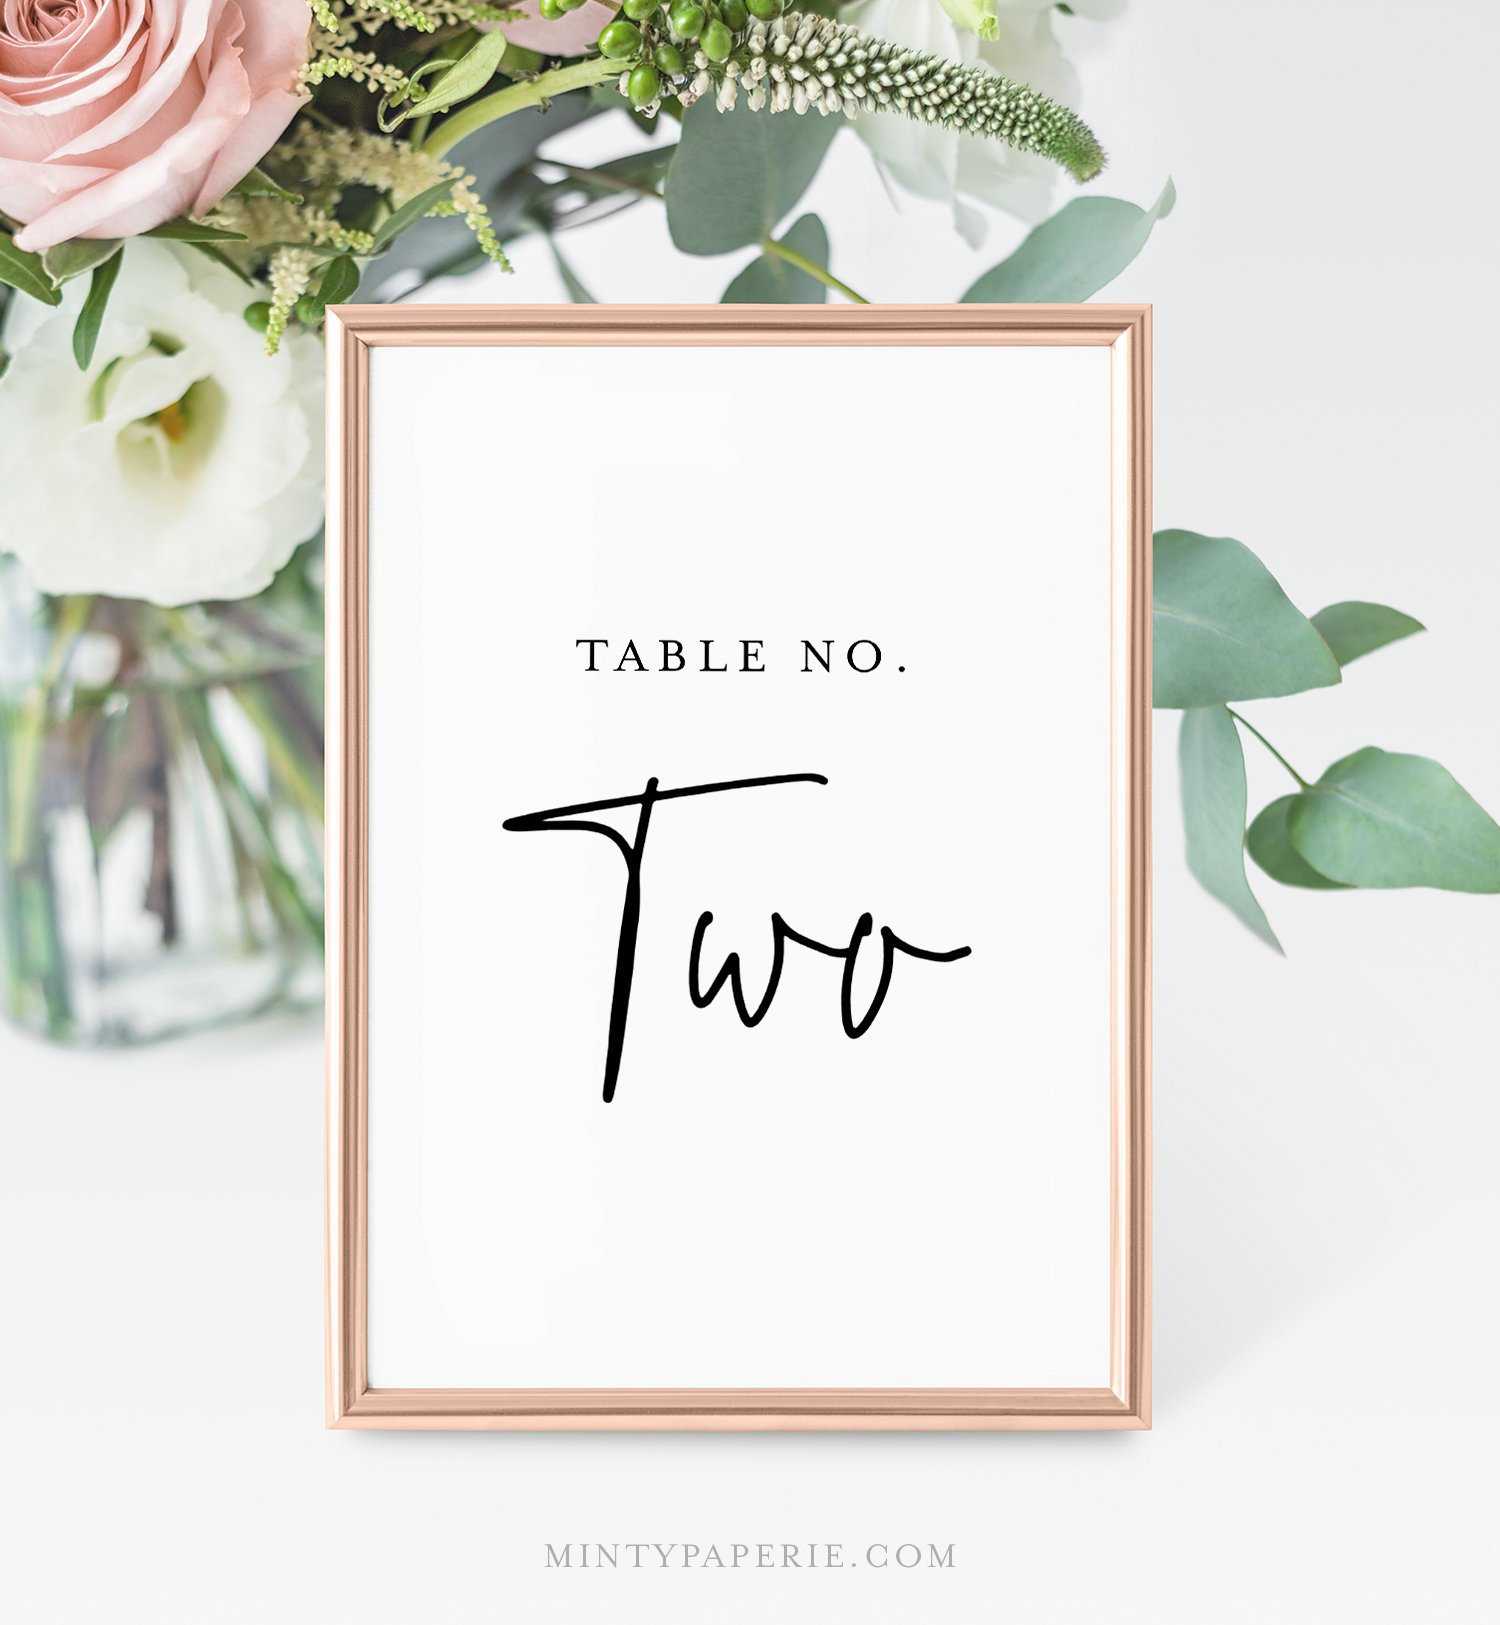 Printable Table Number Cards, Minimalist Wedding Table Inside Table Number Cards Template